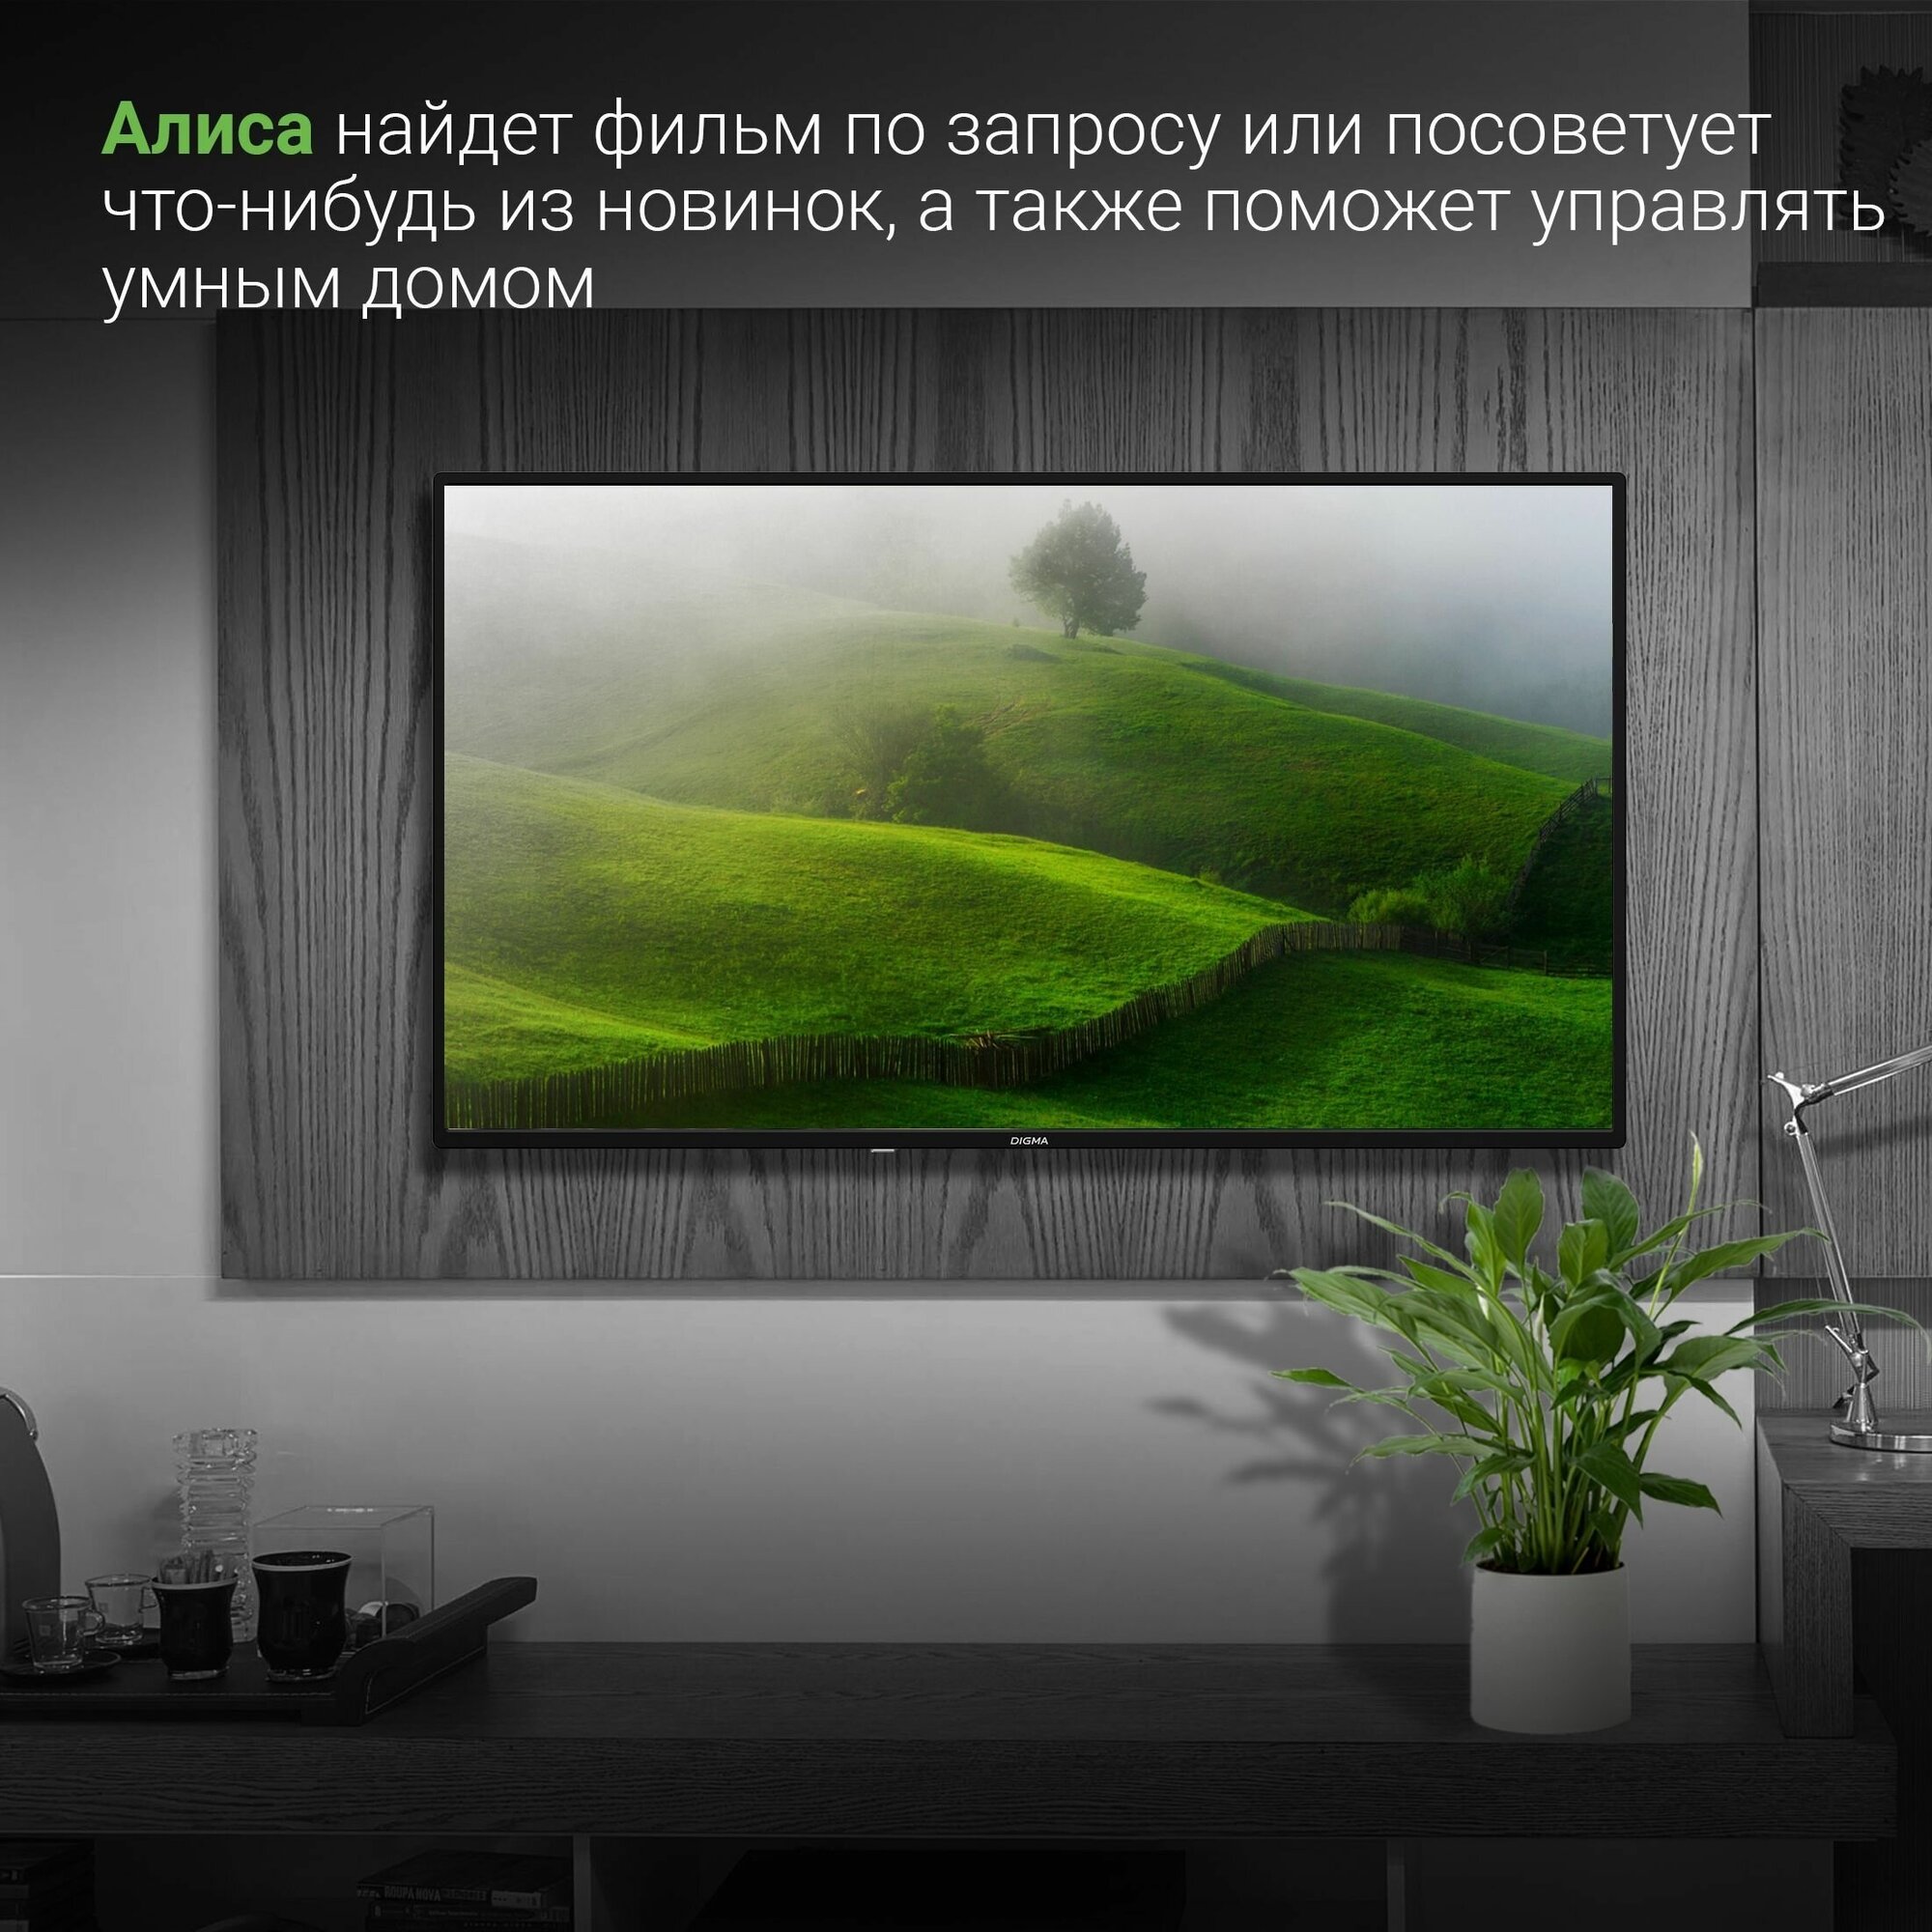 Телевизор Digma Яндекс.ТВ DM-LED43SBB31, 43", LED, FULL HD, Яндекс.ТВ, черный - фото №5